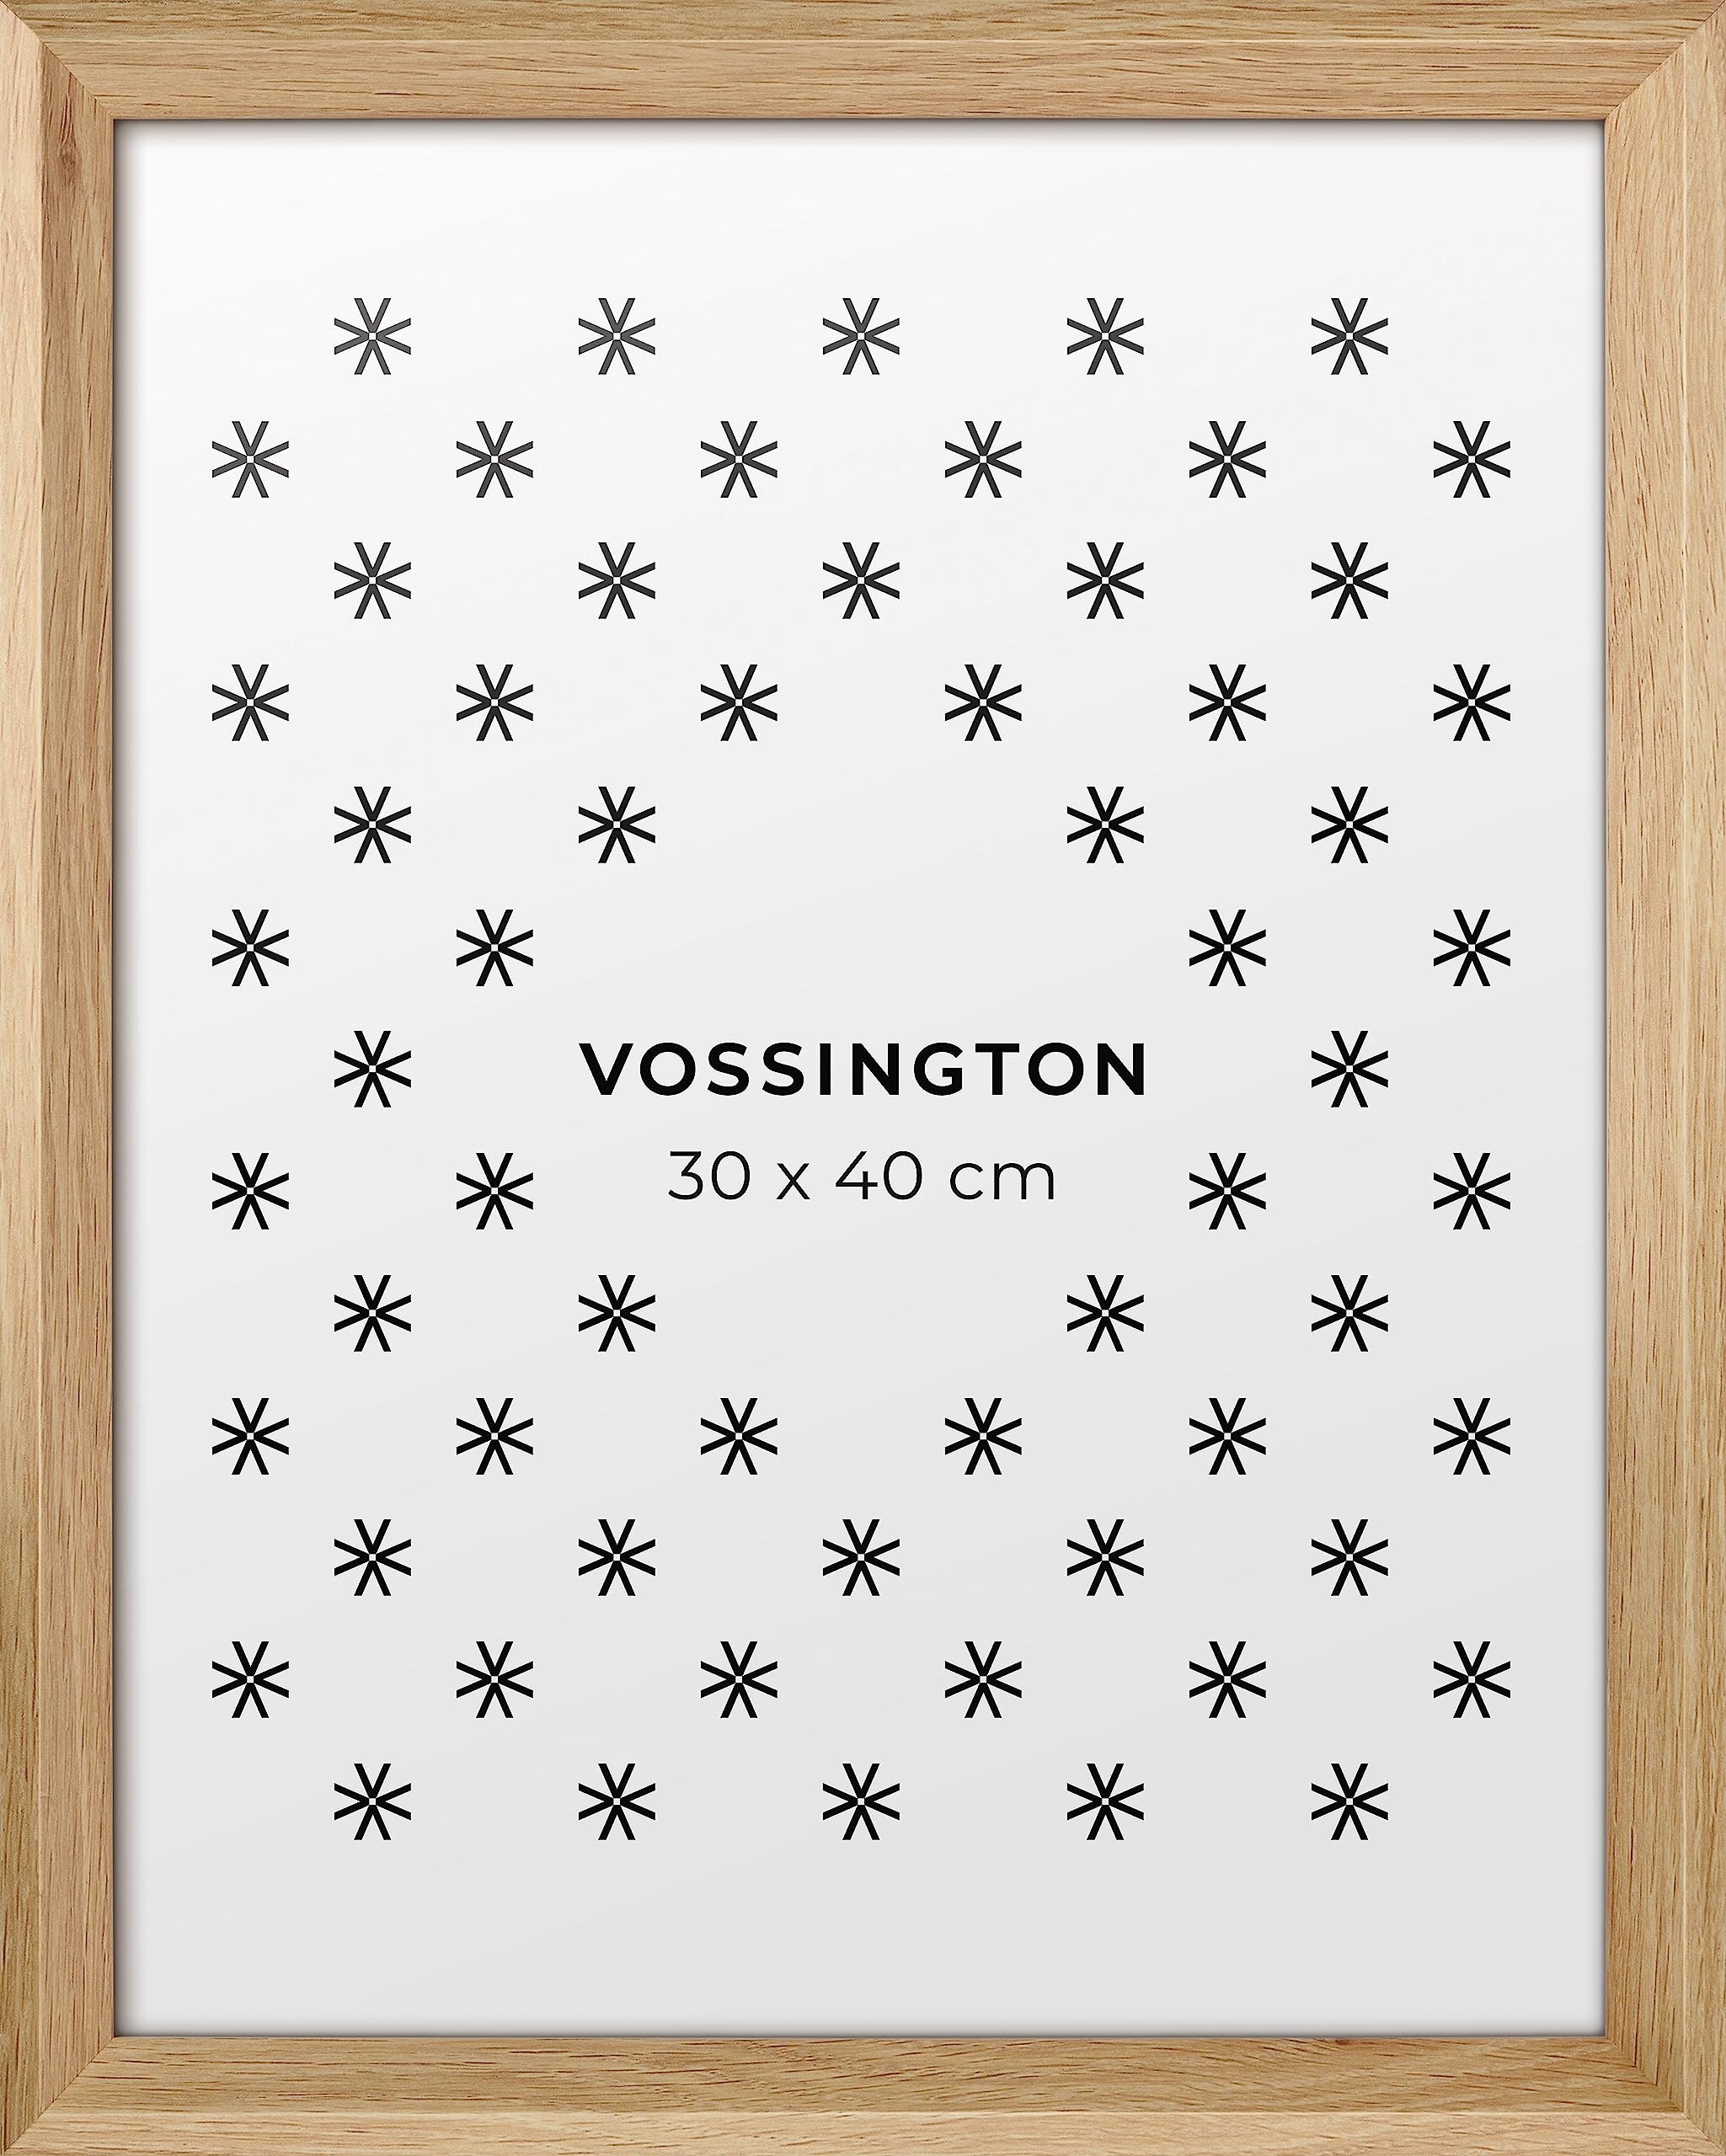 Vossington Bilderrahmen 30x40 Eiche - Holz (künstliche Holzmaserung) - Moderner Rahmen mit abgeschrägter Kante - Rahmen für 1 Bild, Foto, Poster oder Puzzle im Format 30 x 40 cm (40x30 cm)